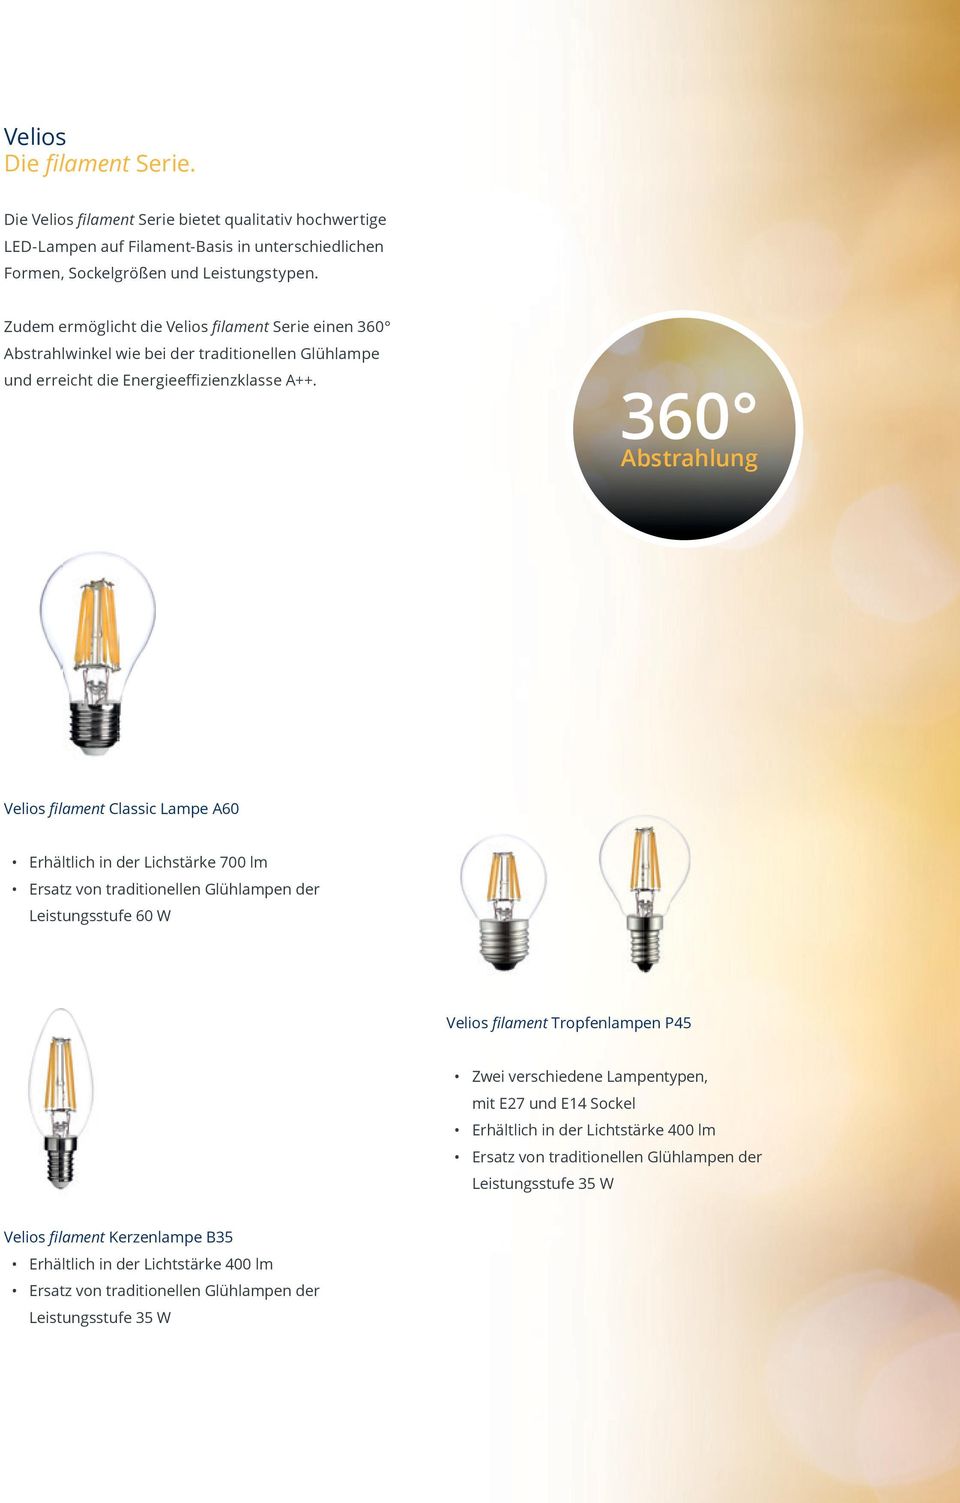 360 Abstrahlung Velios filament Classic Lampe A60 Erhältlich in der Lichstärke 700 lm Ersatz von traditionellen Glühlampen der Leistungsstufe 60 W Velios filament Tropfenlampen P45 Zwei